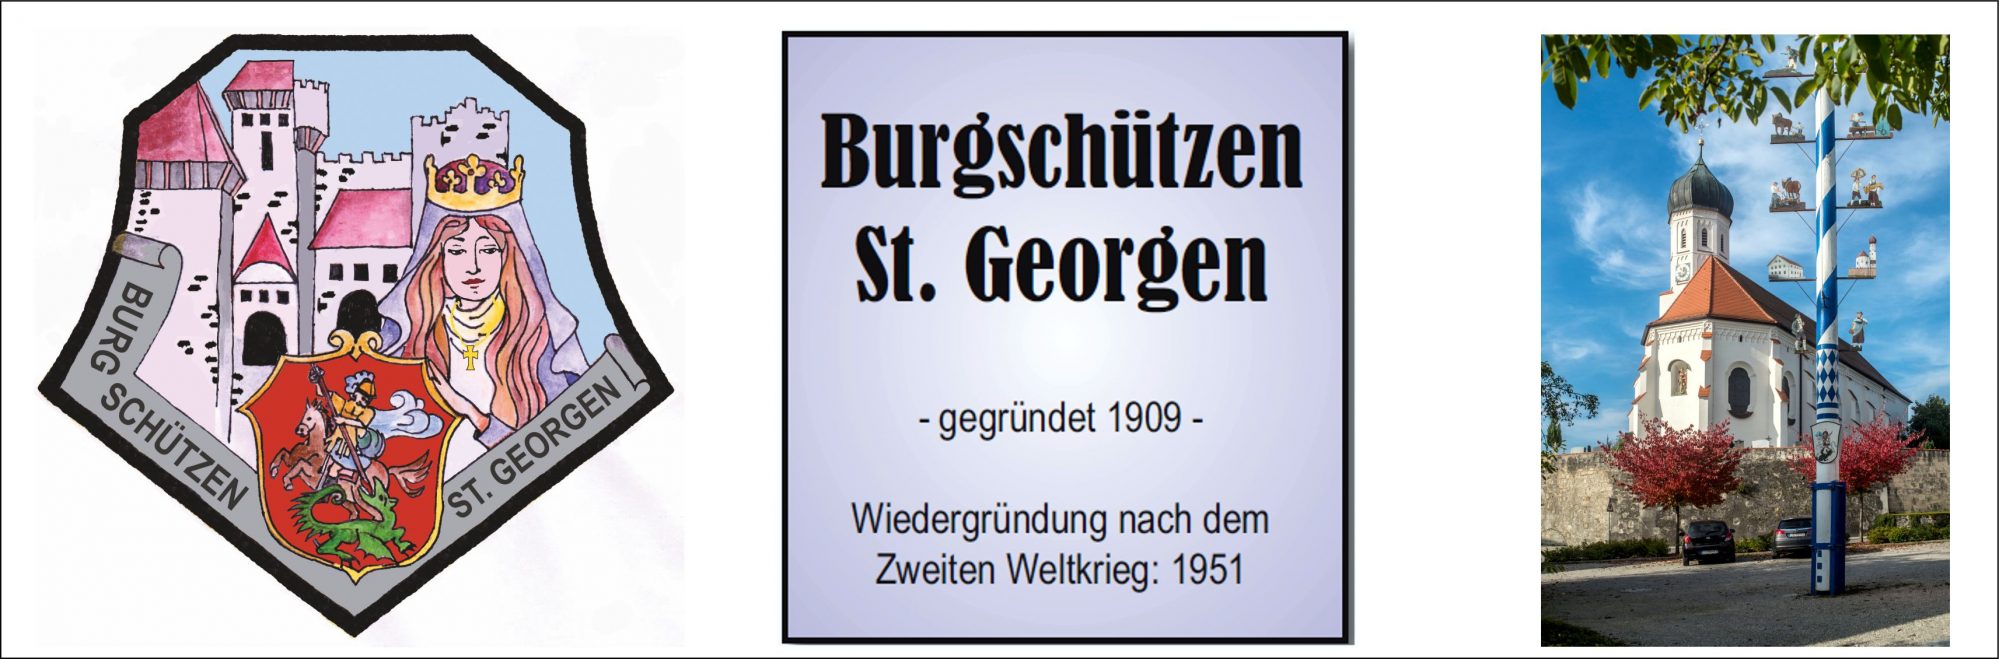 BURGSCHÜTZEN ST. GEORGEN E.V.